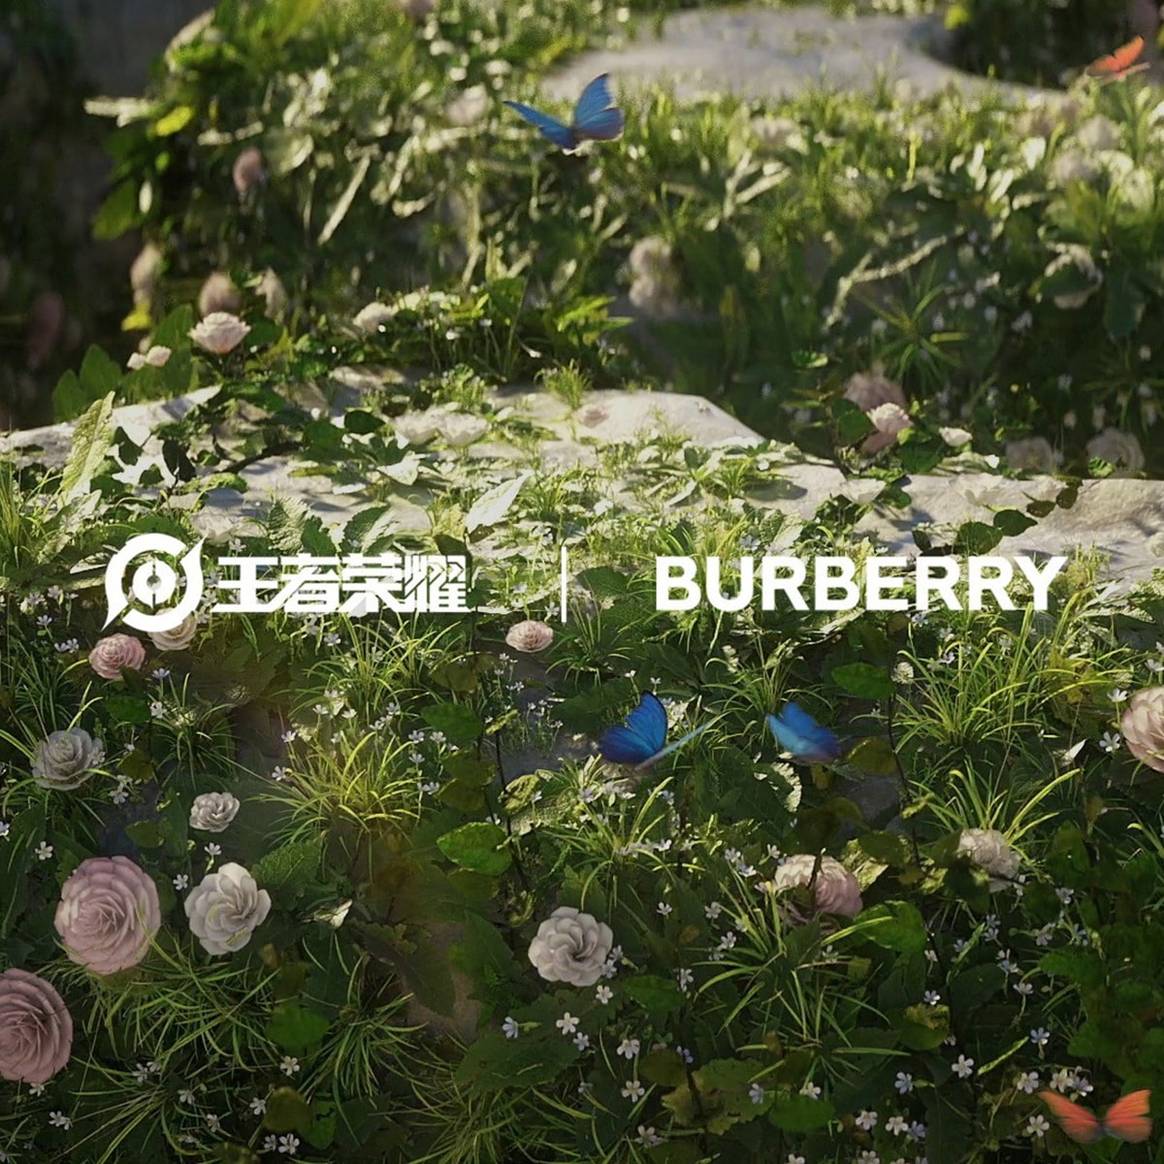 Burberry estrecha lazos con Tencent y entrará en su videojuego “Honour of Kings”